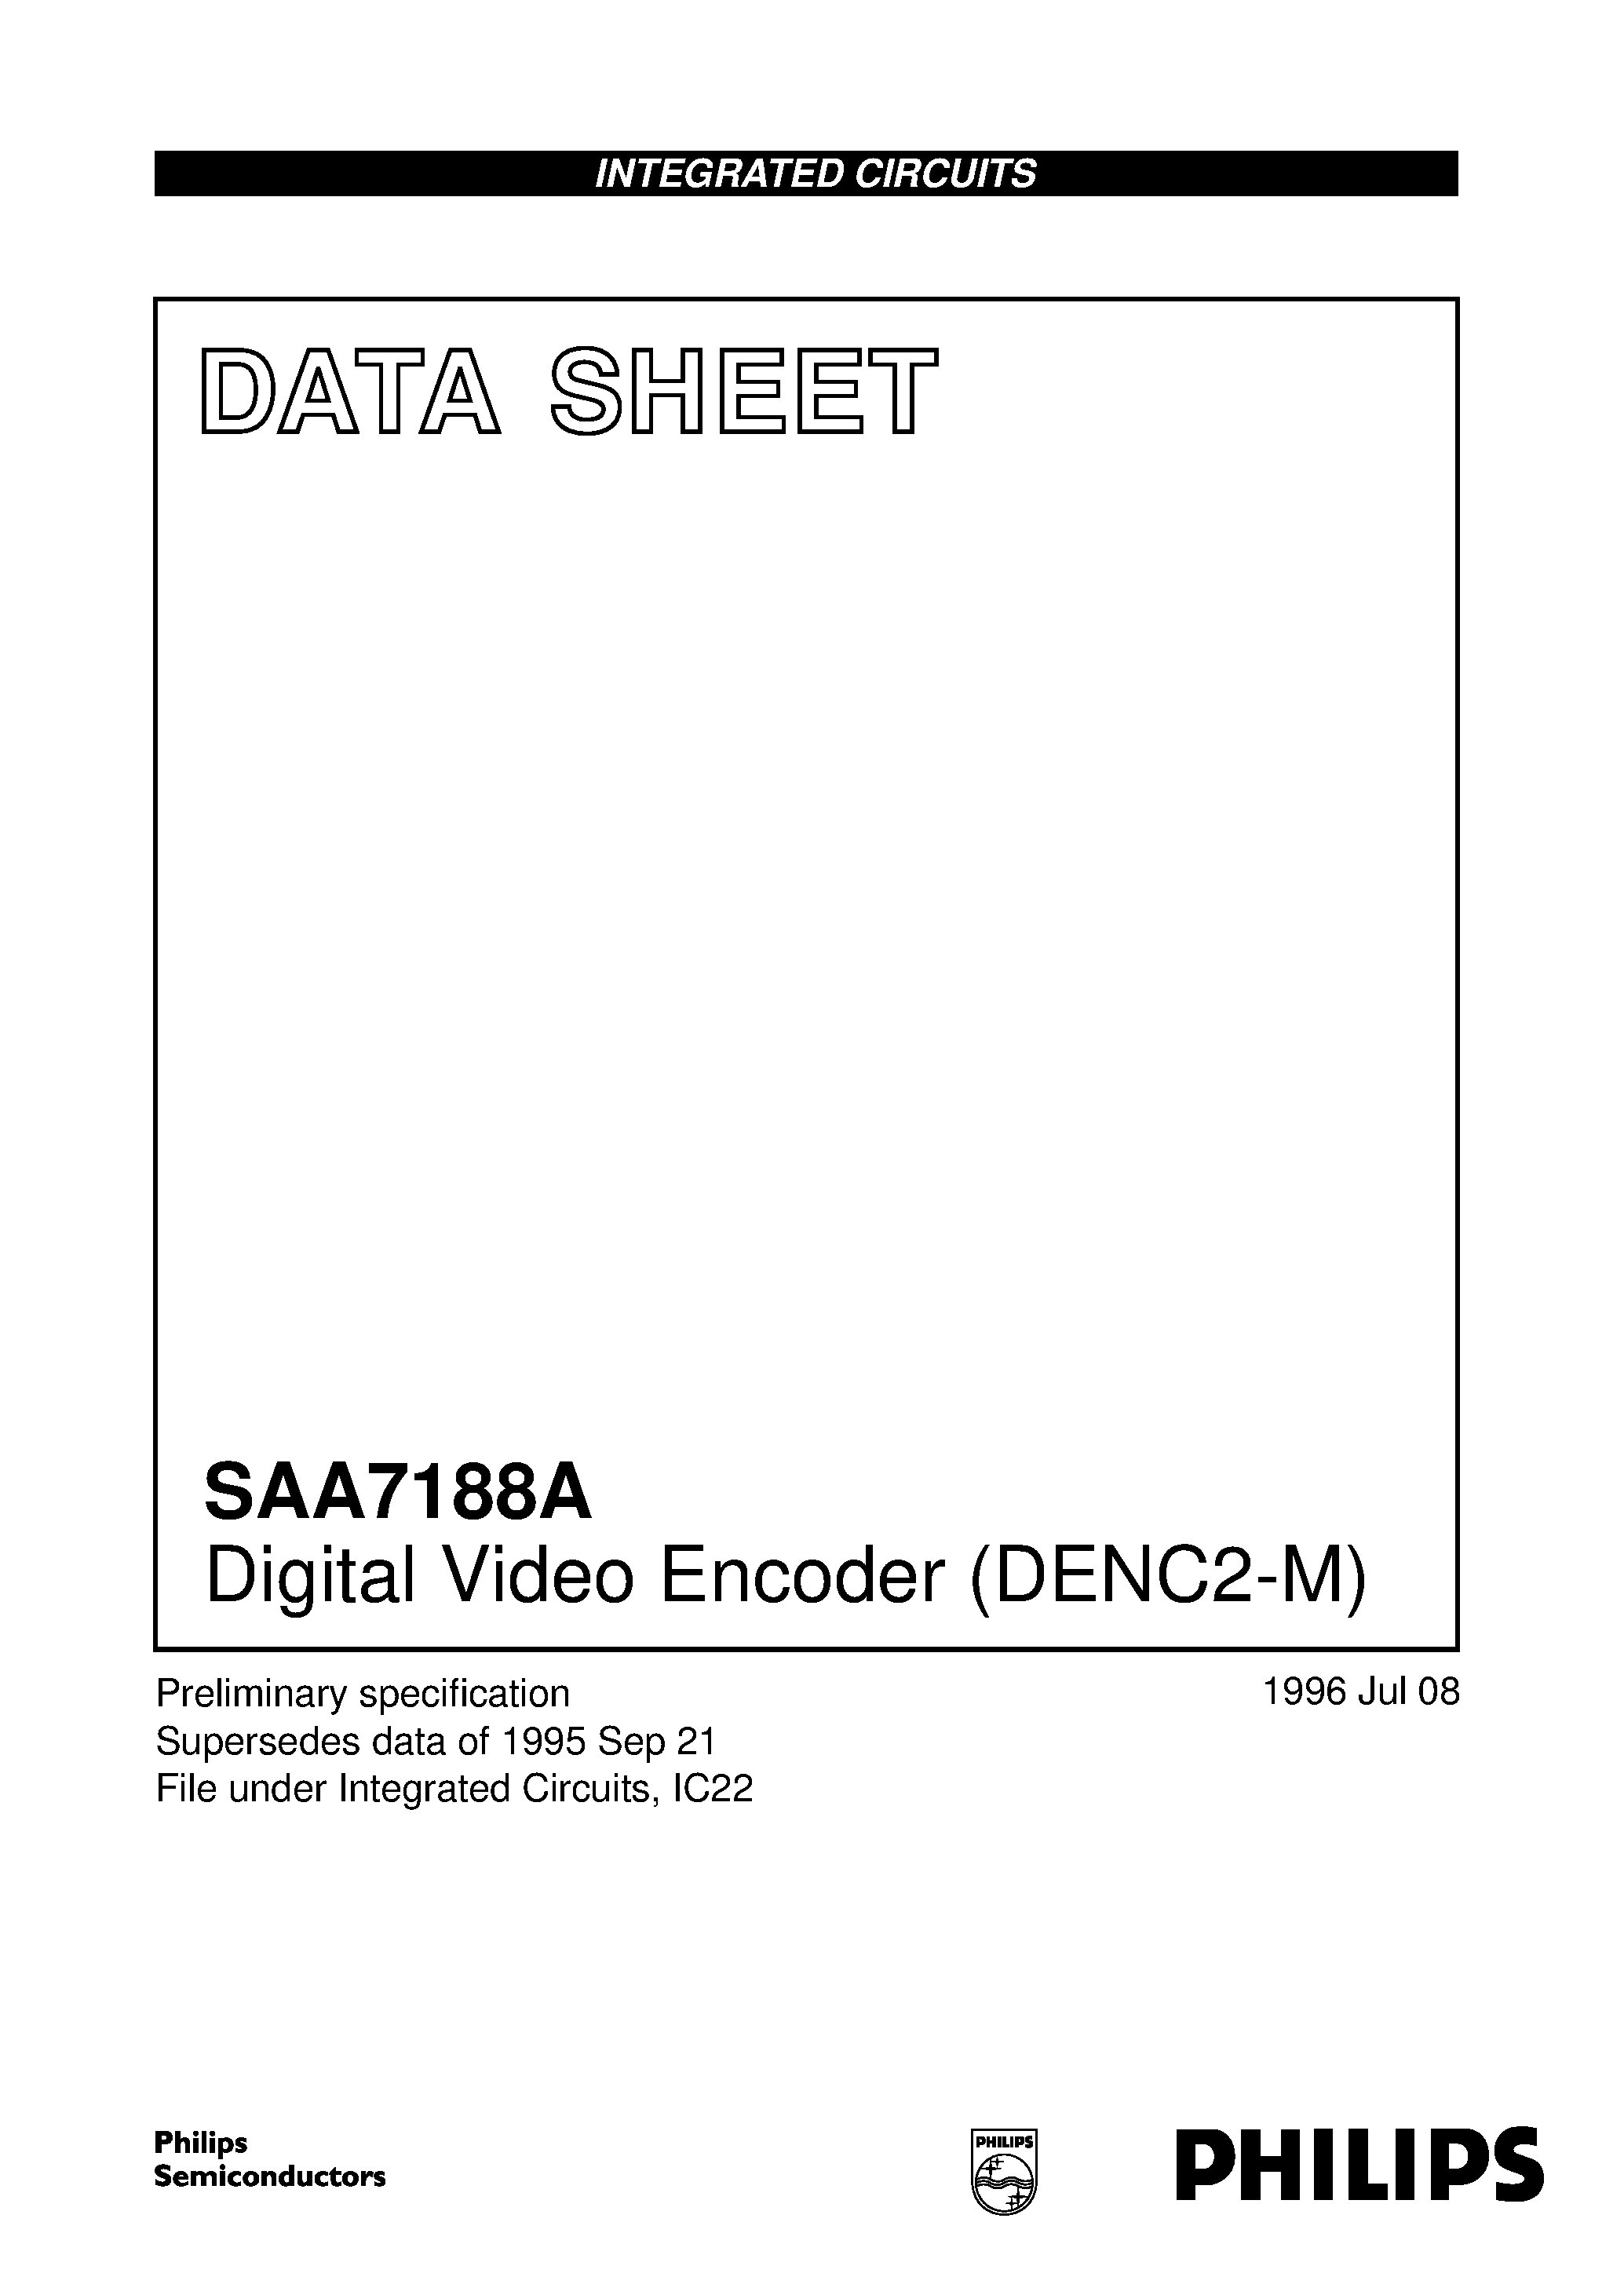 Datasheet SAA7188AWP - Digital Video Encoder DENC2-M page 1